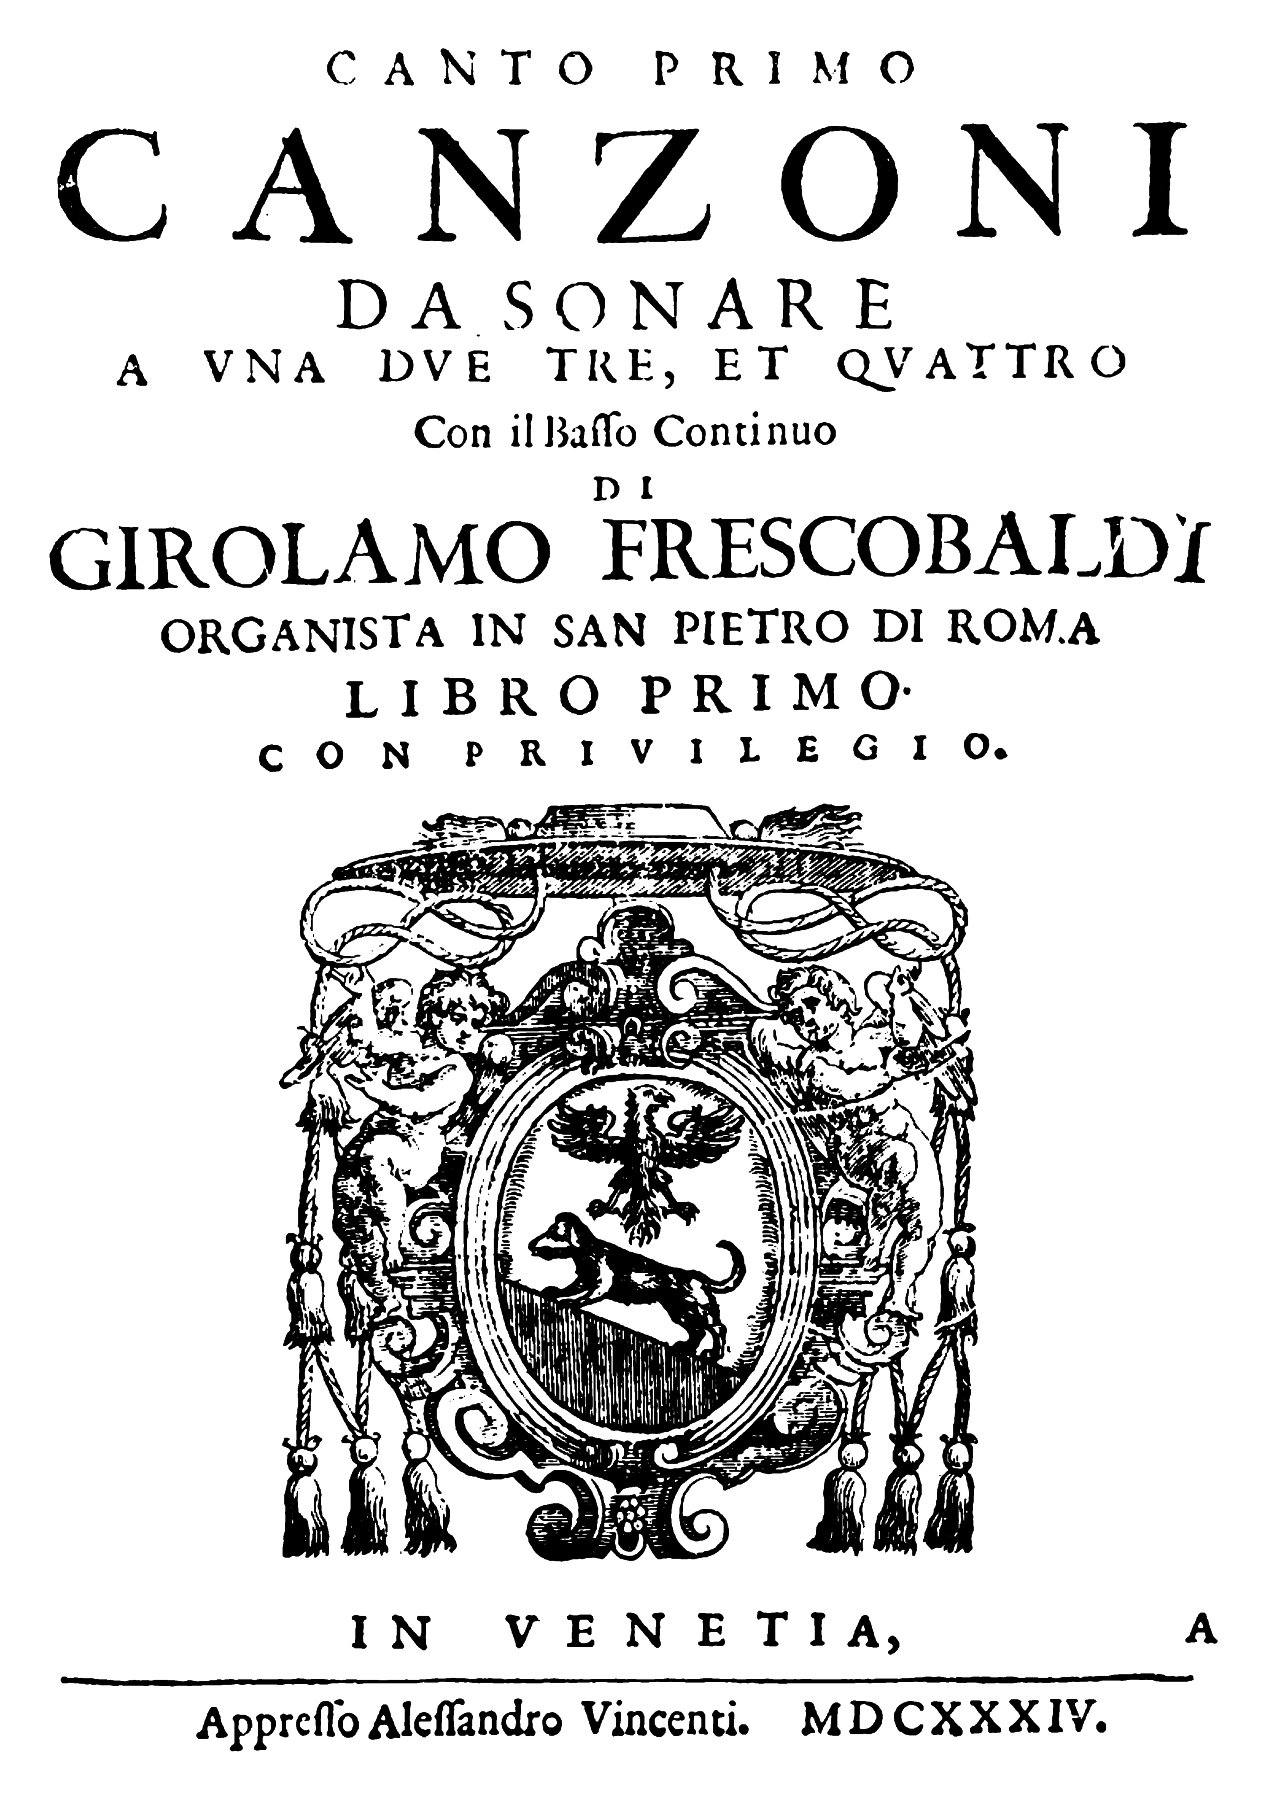 Frescobaldi: Canzoni da sonare a una, due, tre et quattro libro prim (Rom 1628)